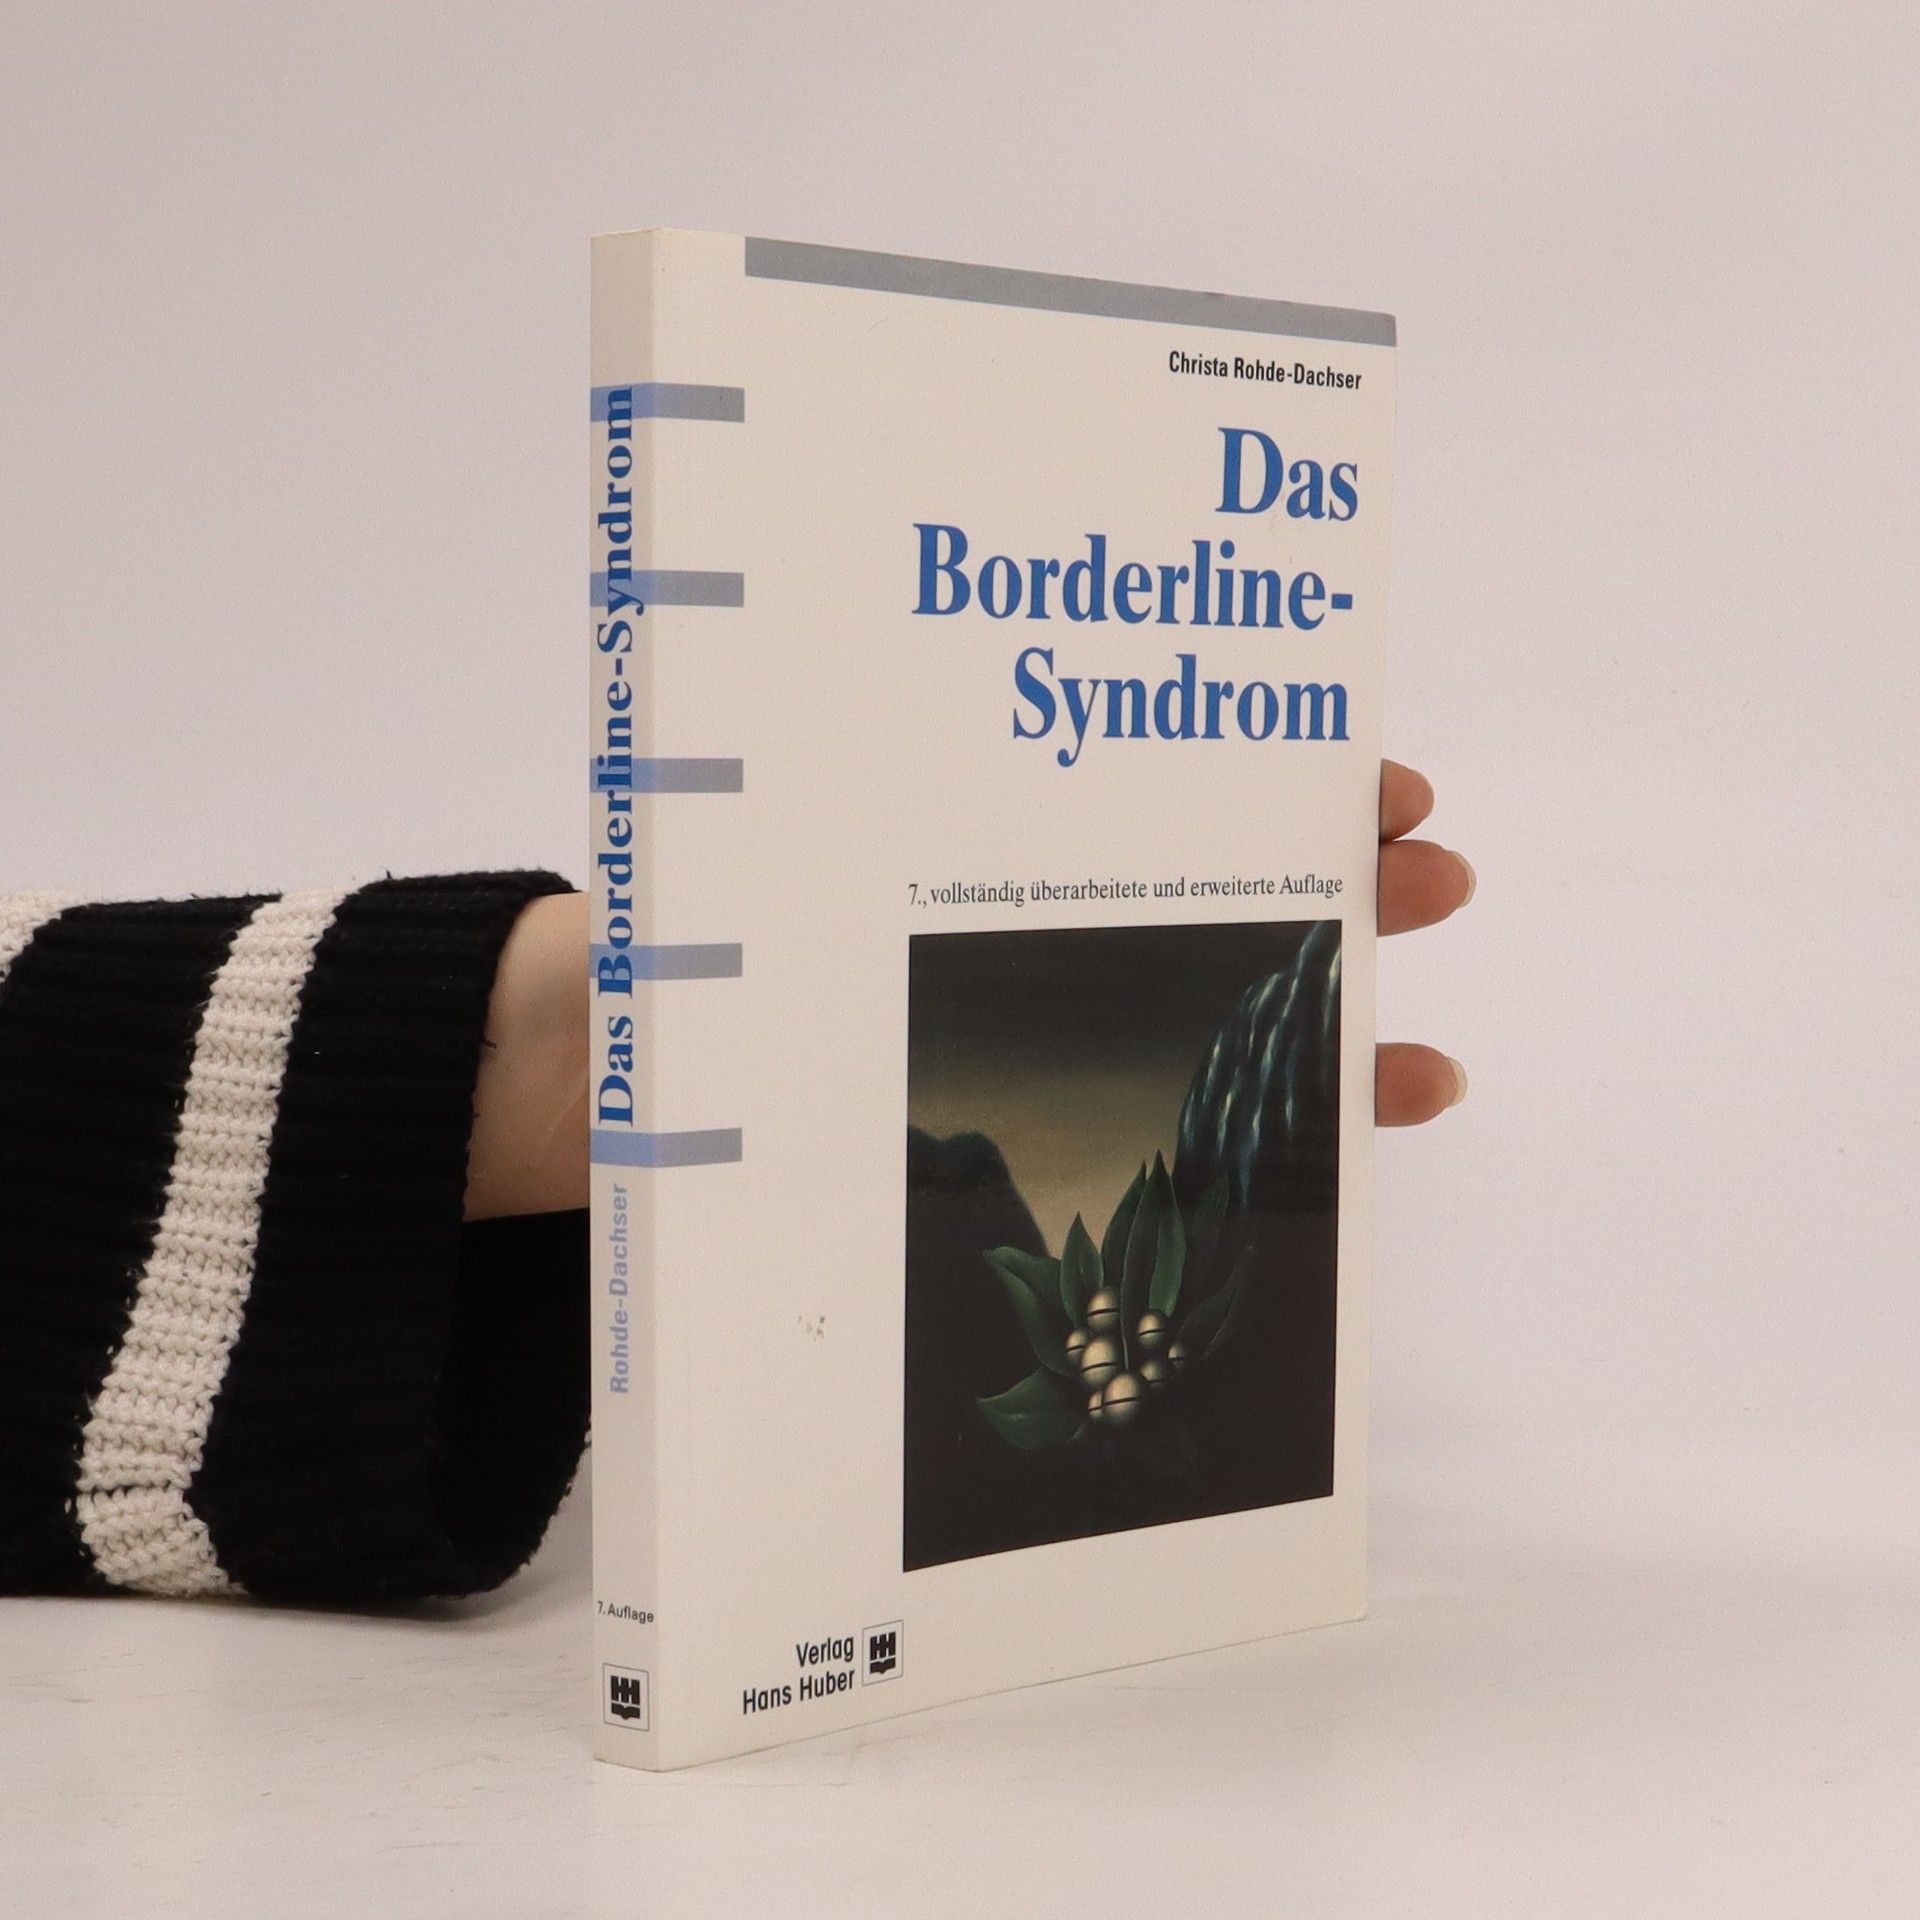 Das Borderline-Syndrom - Christa Rohde Dachser